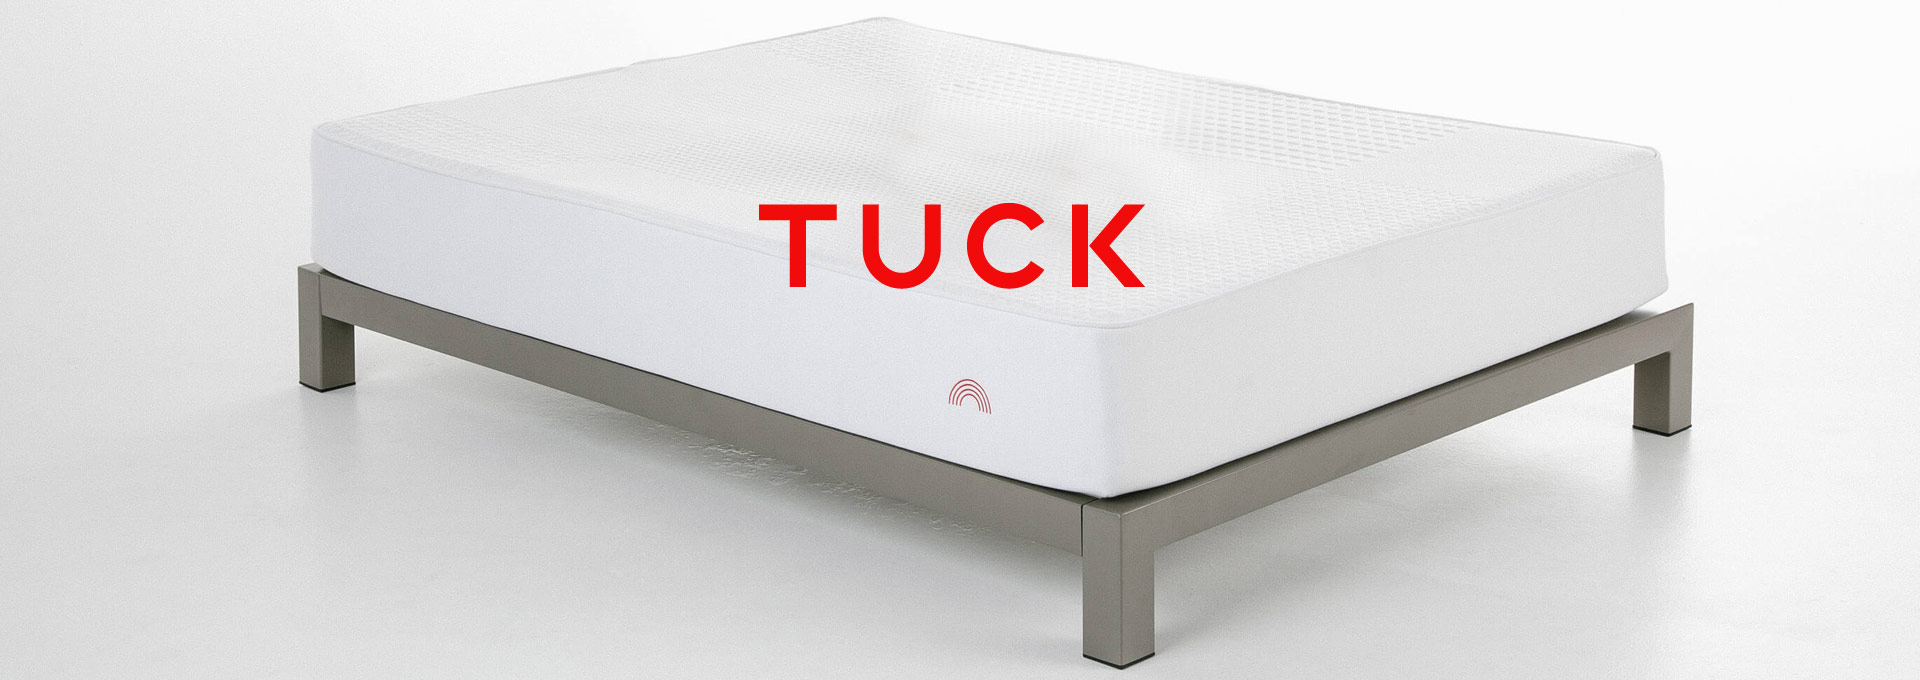 Tuck mattress review featured